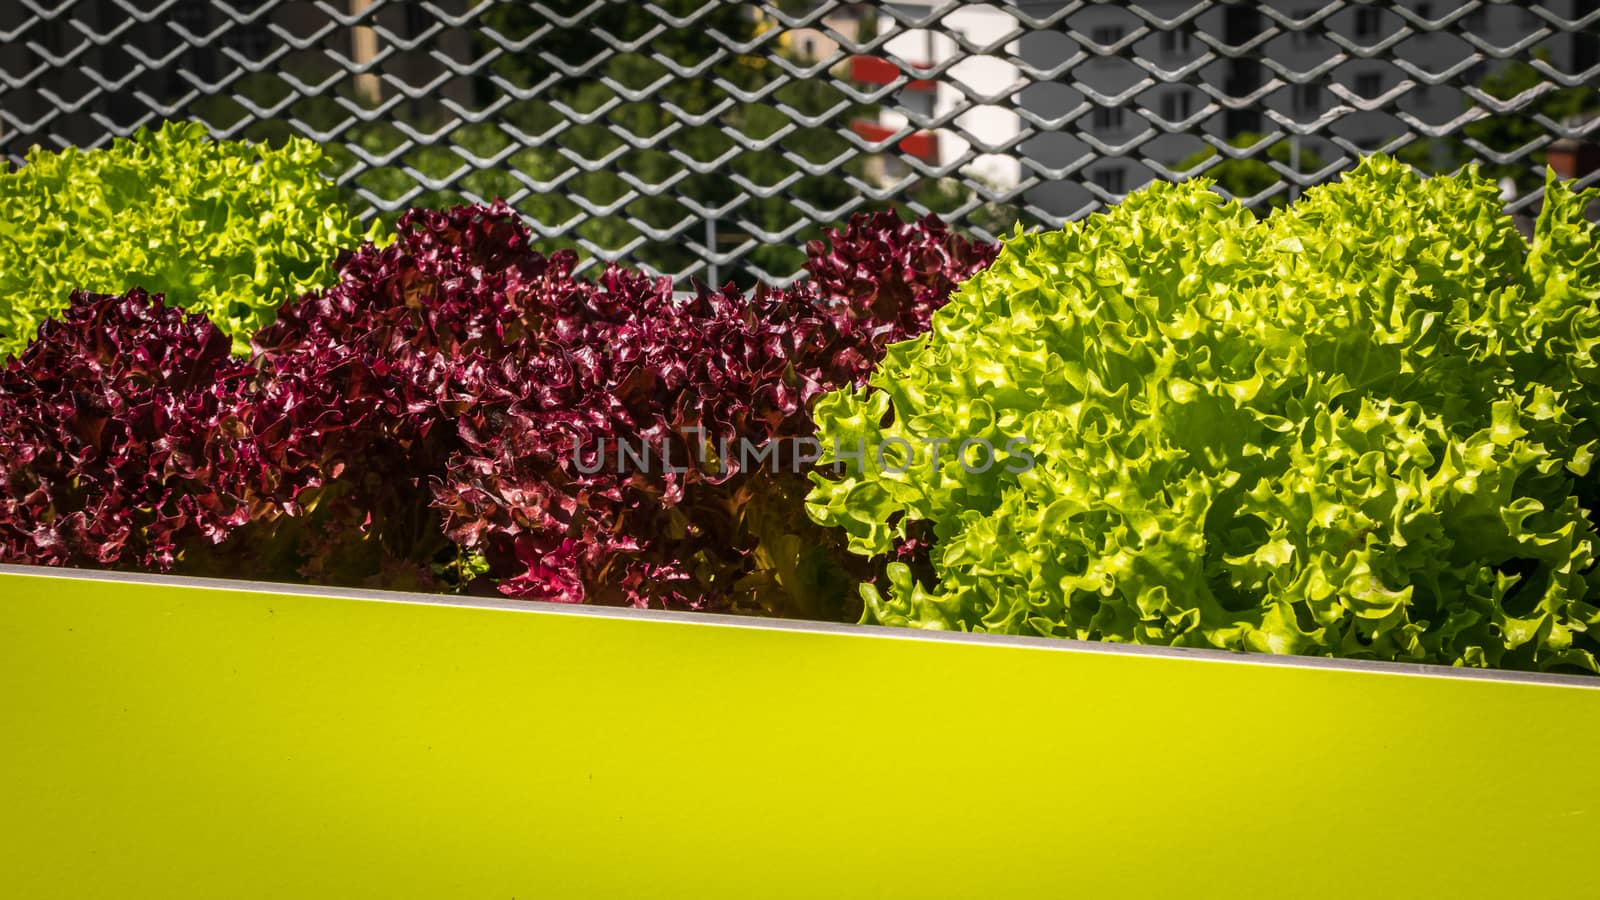 Urban gardening - Lollo bionda and Lollo rosso lettuce in stylish planters on a terrace in Vienna (Austria) by Umtsga